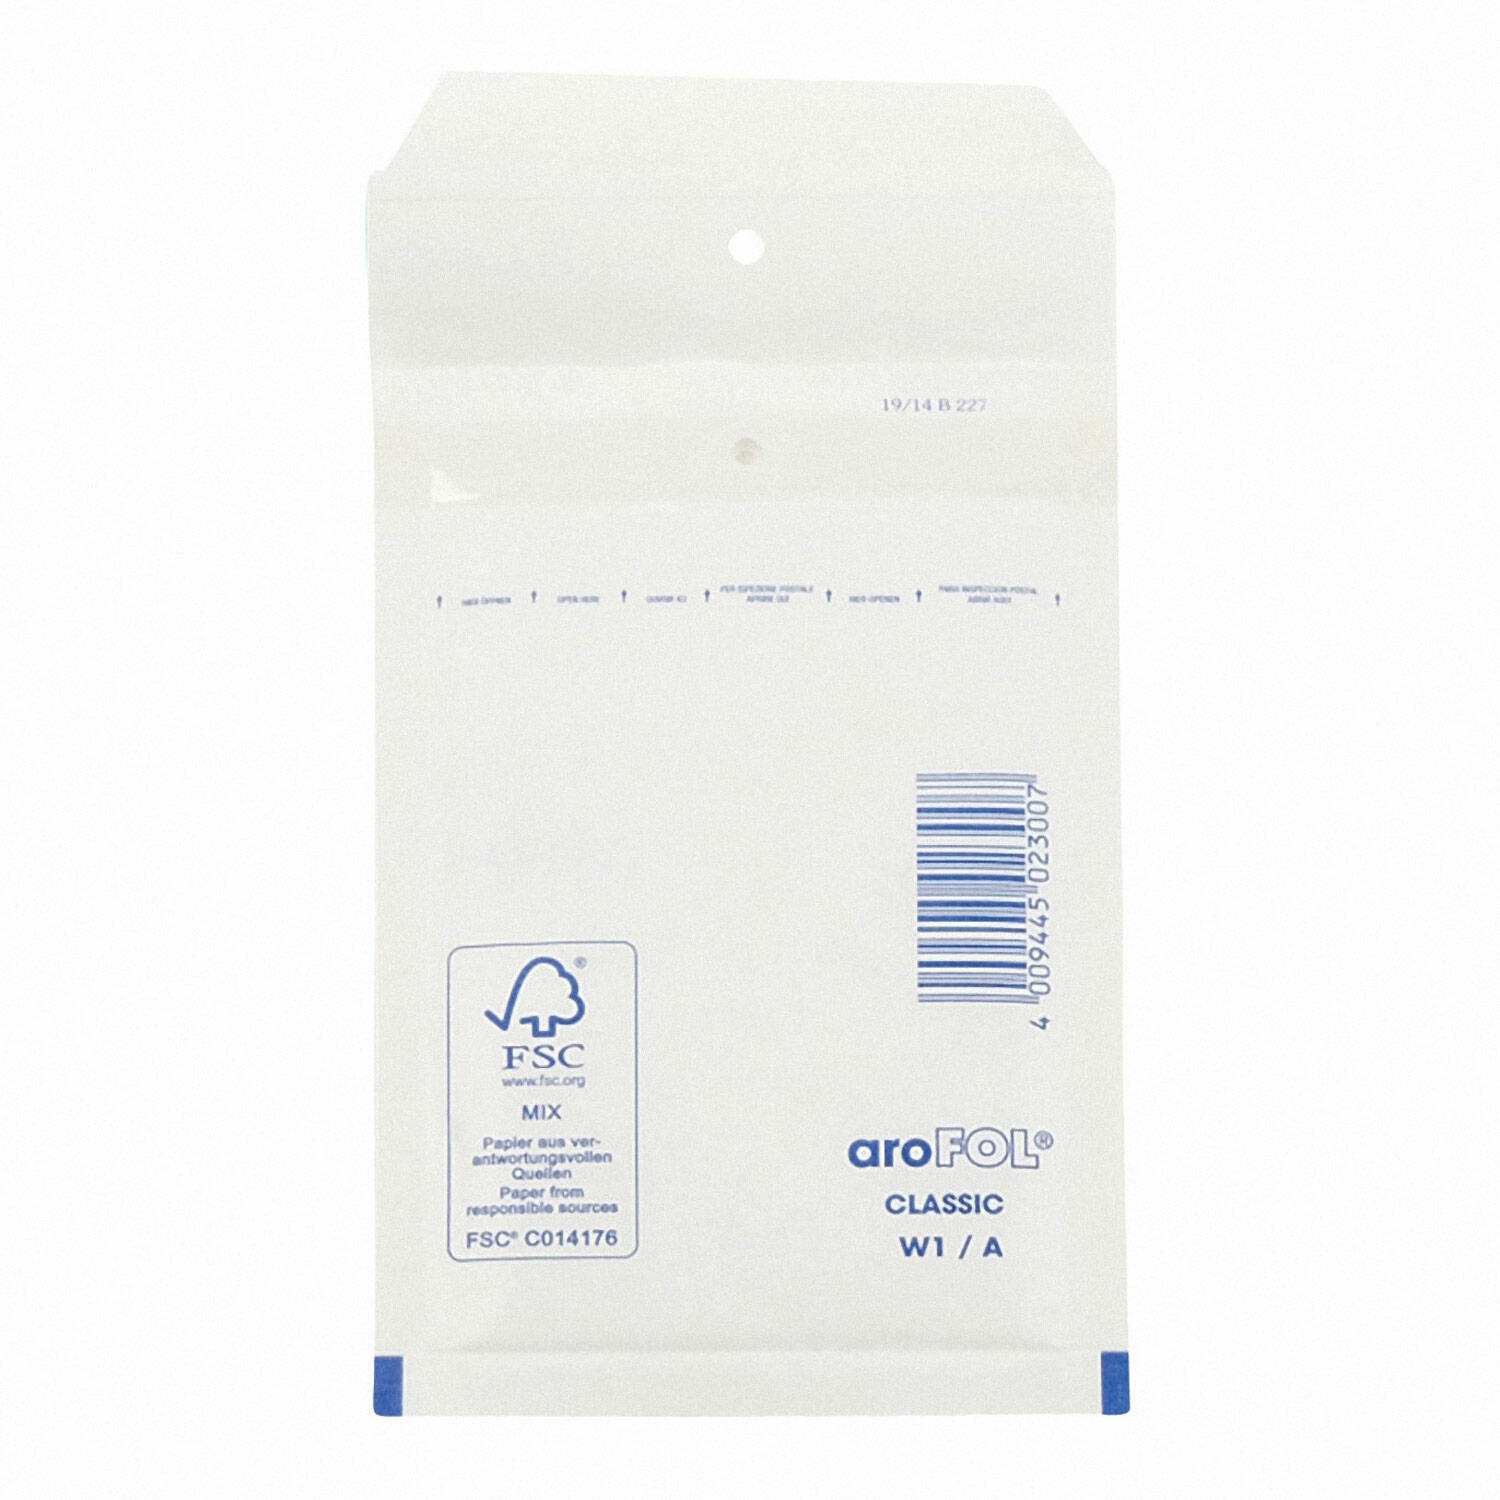 AROFOL CLASSIC Luftpolstertasche  1/A-11W, 100x165mm, weiß